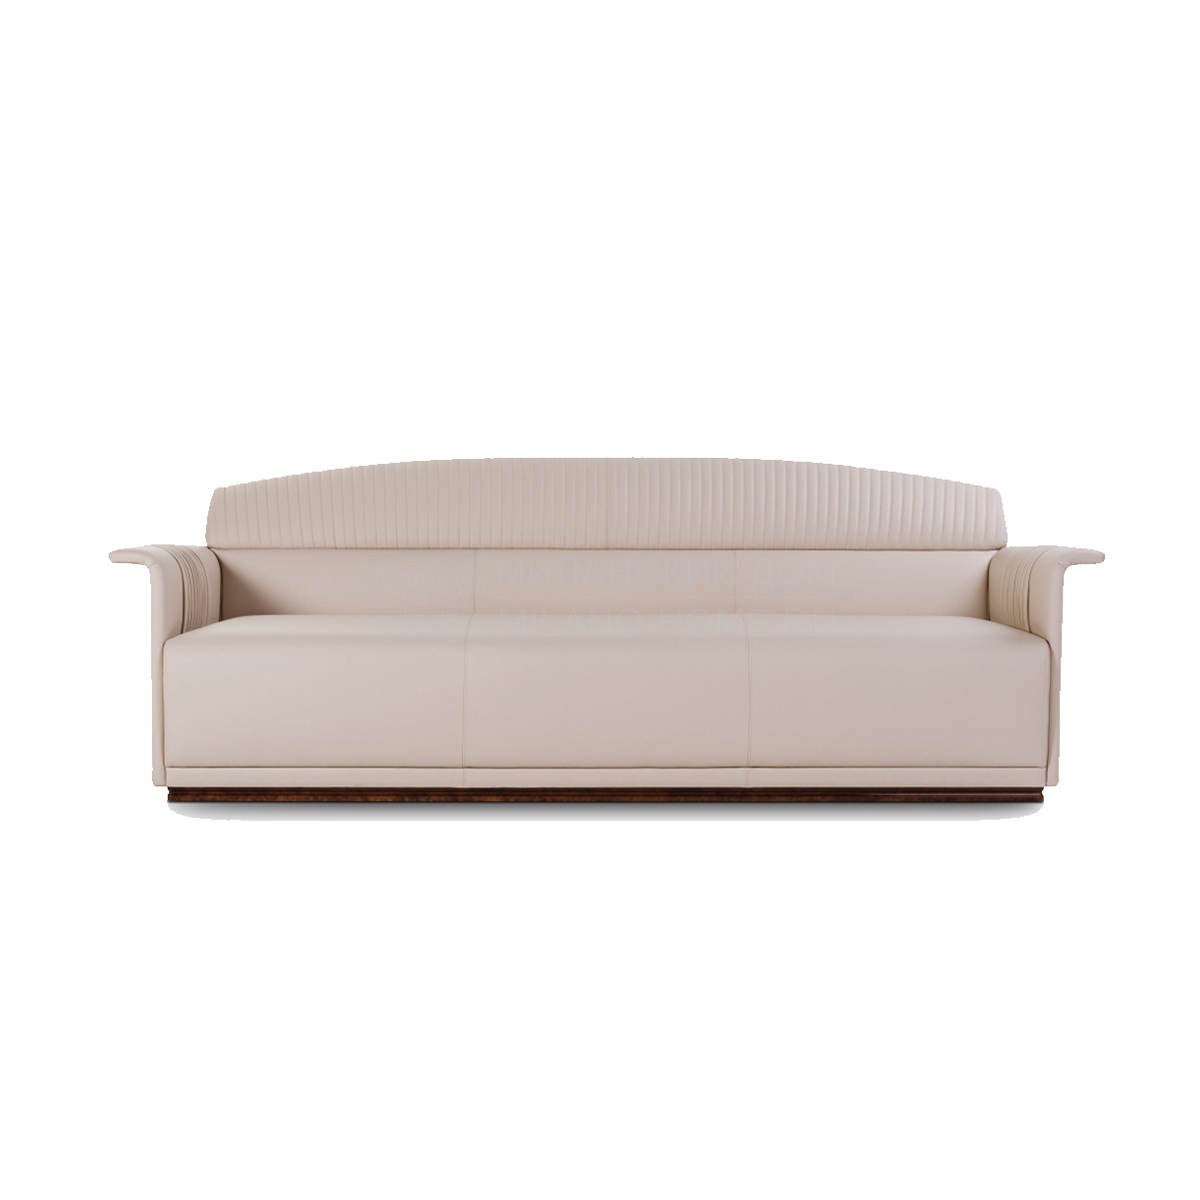 Прямой диван Madison sofa из Италии фабрики TURRI